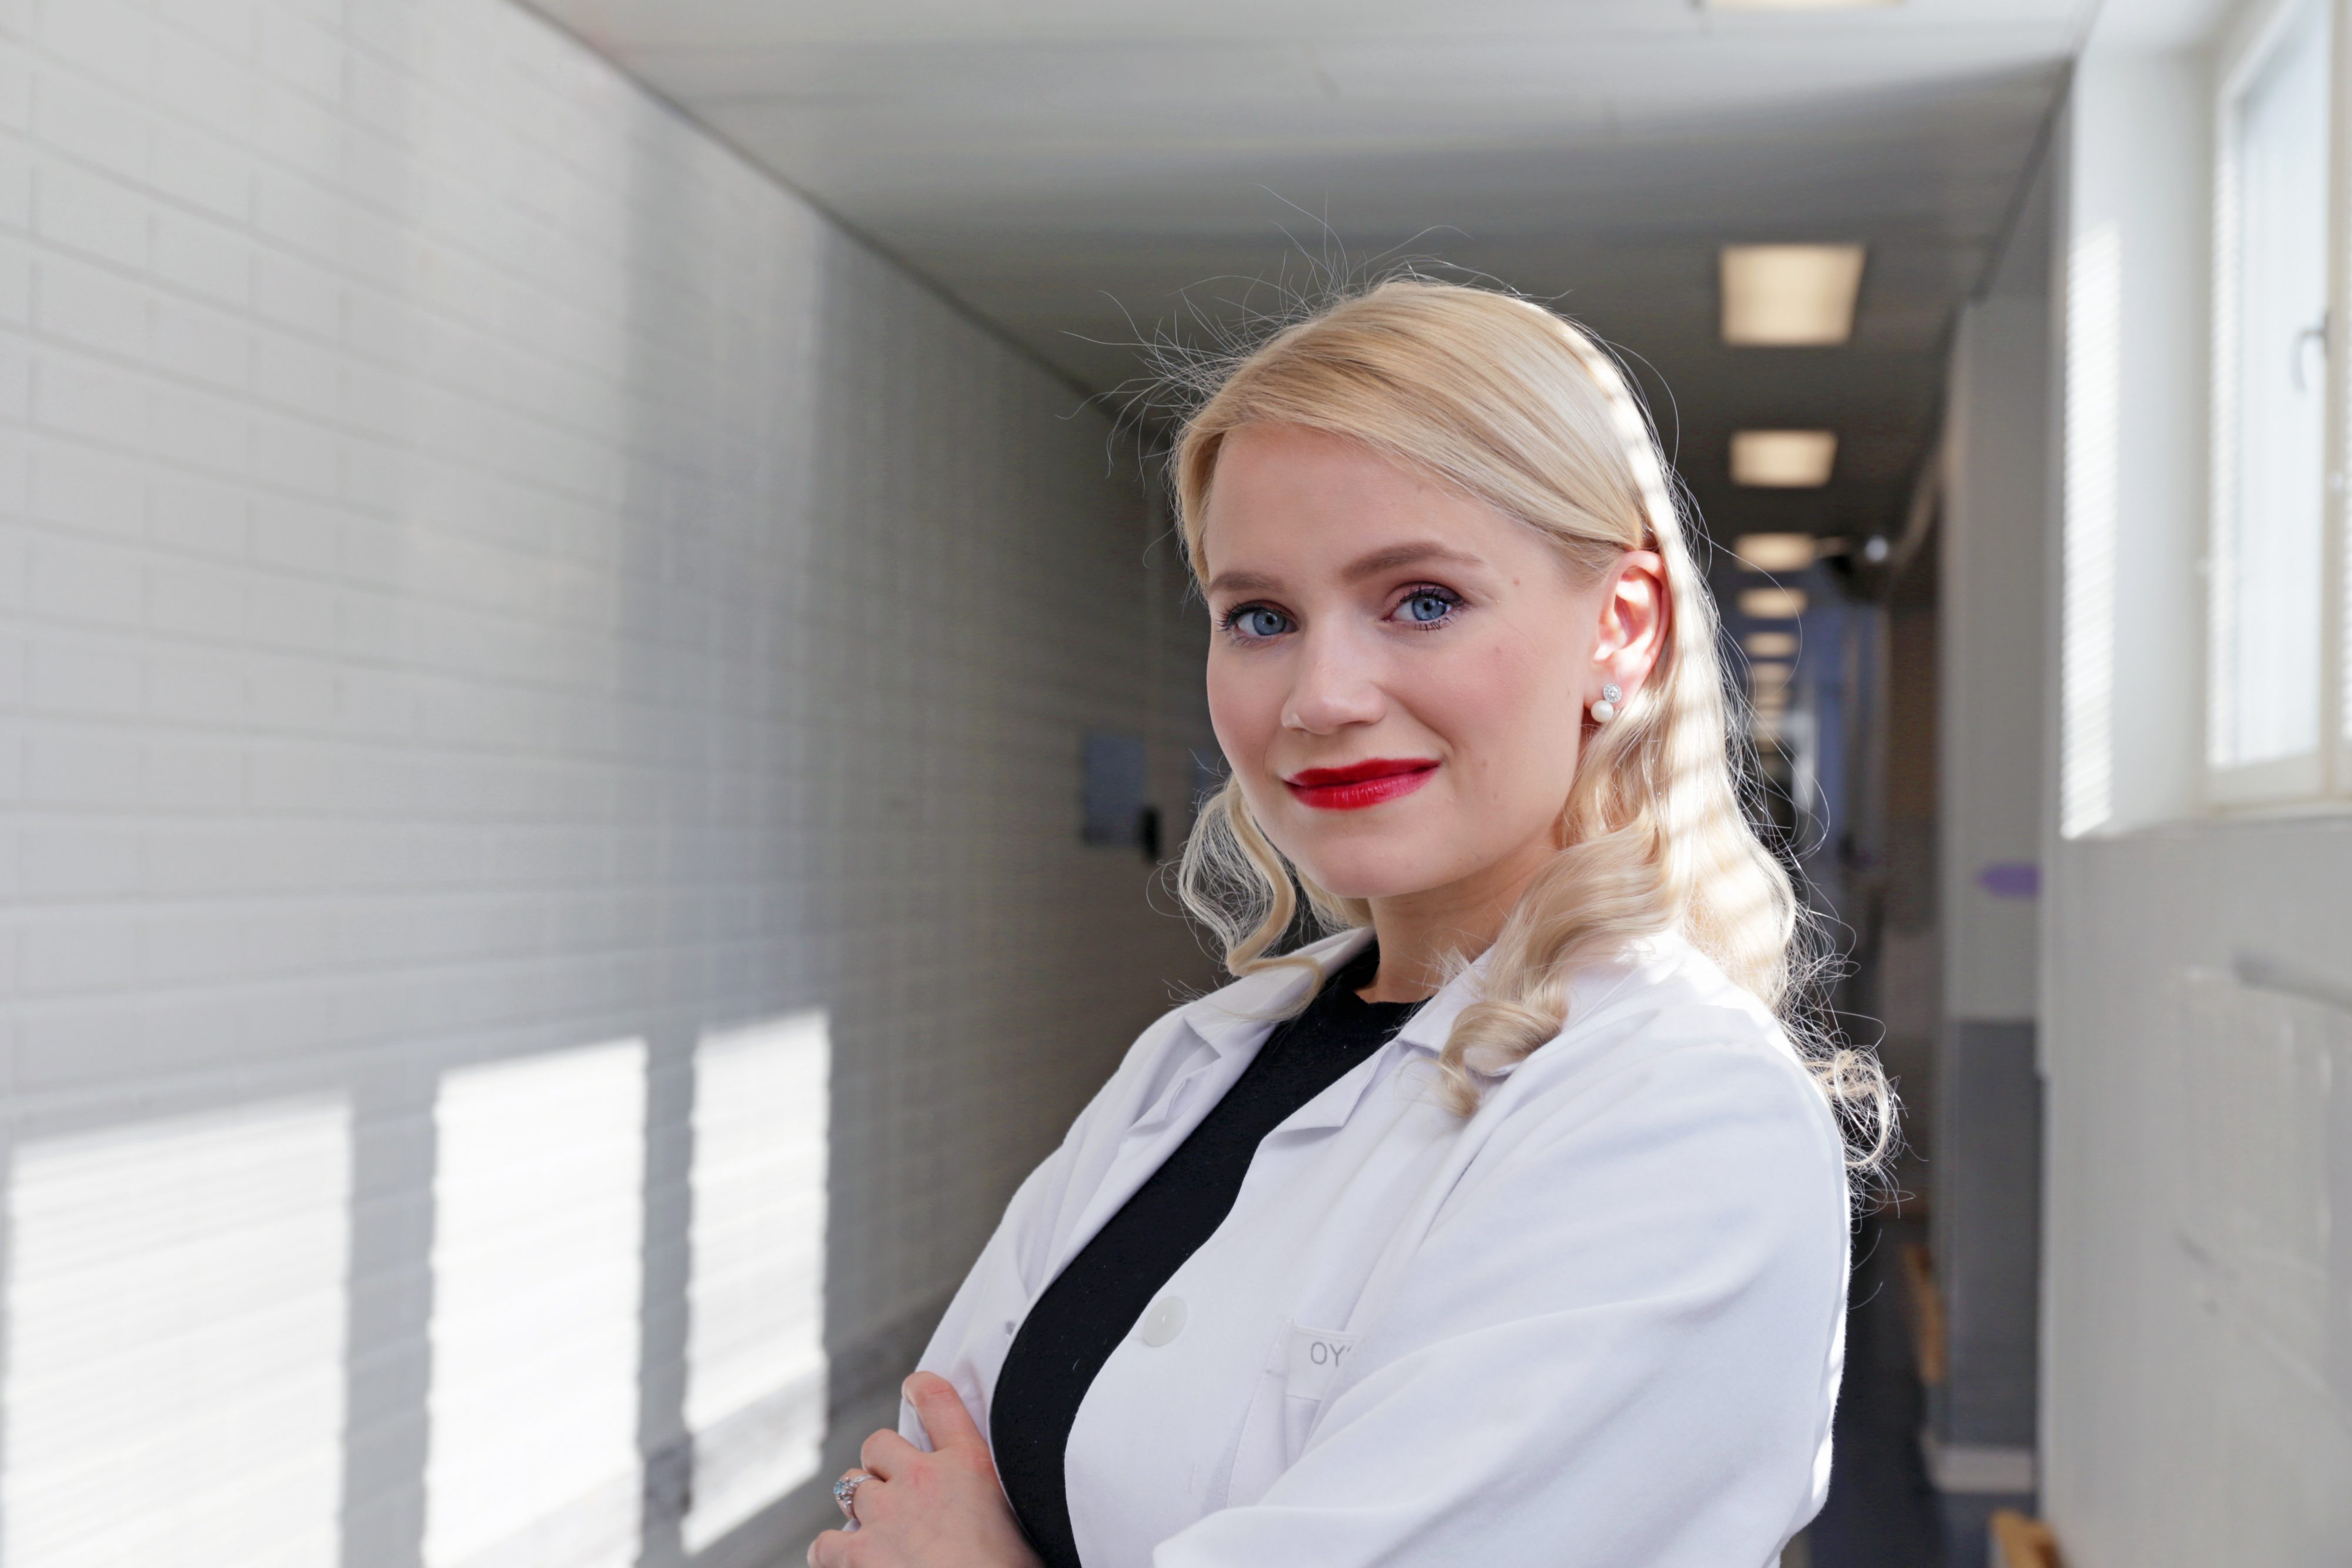 Vuoden Kandikollegaksi valittu Isabella Niemelä kehuu Oulun lääketieteen opiskelijoiden yhteisöllisyyttä ja auttamisenhalua. Hänen kokemuksensa mukaan opiskelu Oulussa ei ole kilpailuhenkistä  – päin vastoin.